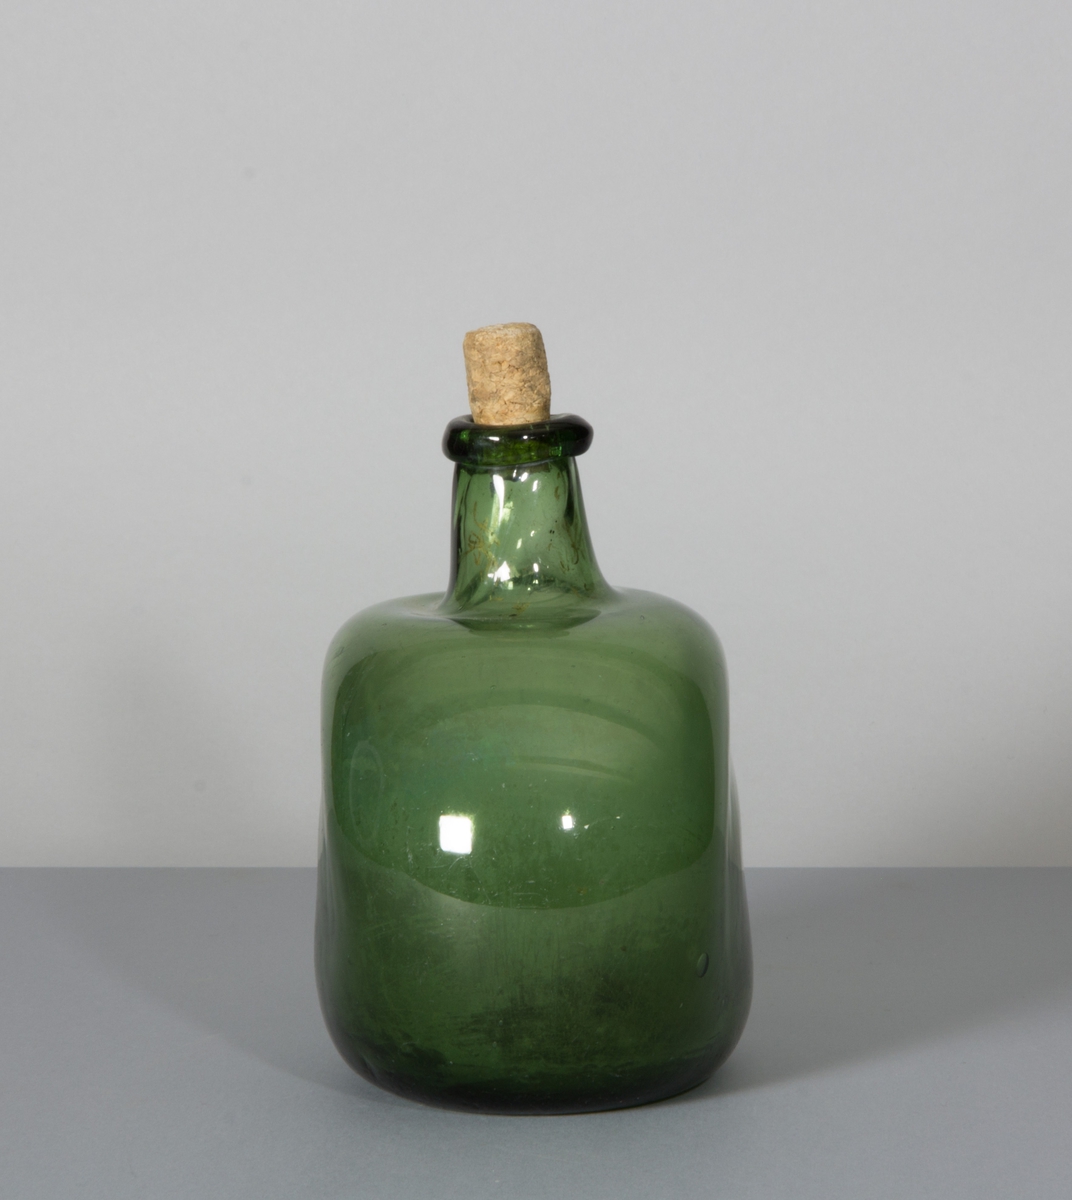 Flaska av glas, grön till färgen. Rundade sidor, hals med halsring och platt botten.